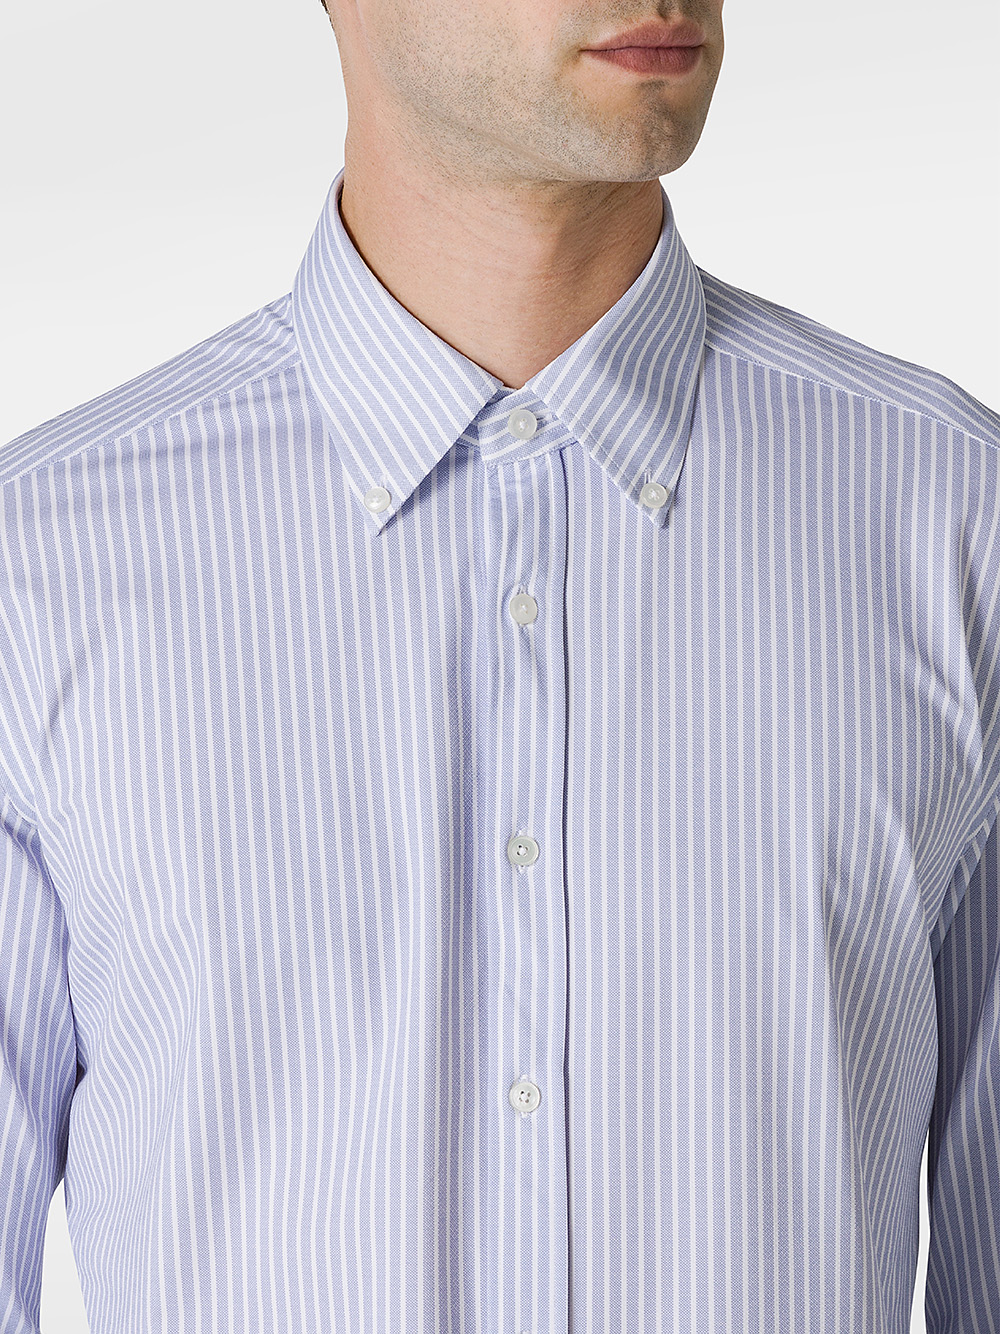 Striped pattern shirt